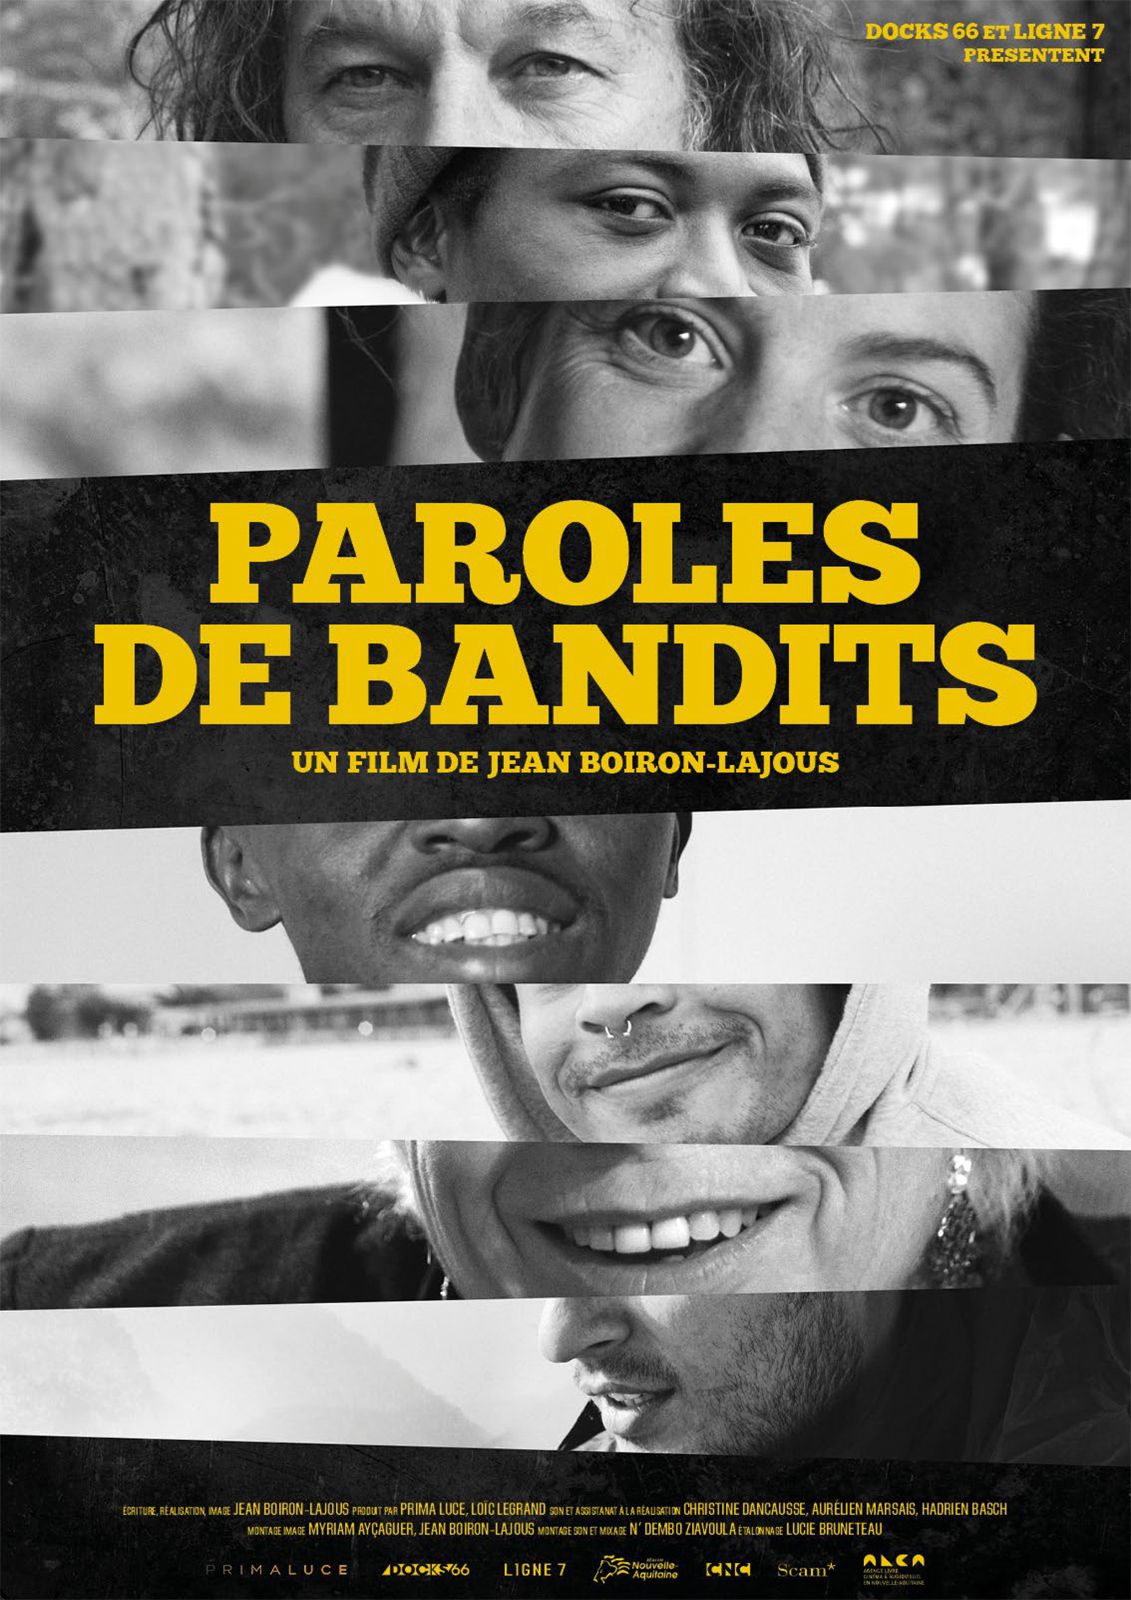 Paroles de bandits - Documentaire (2019)